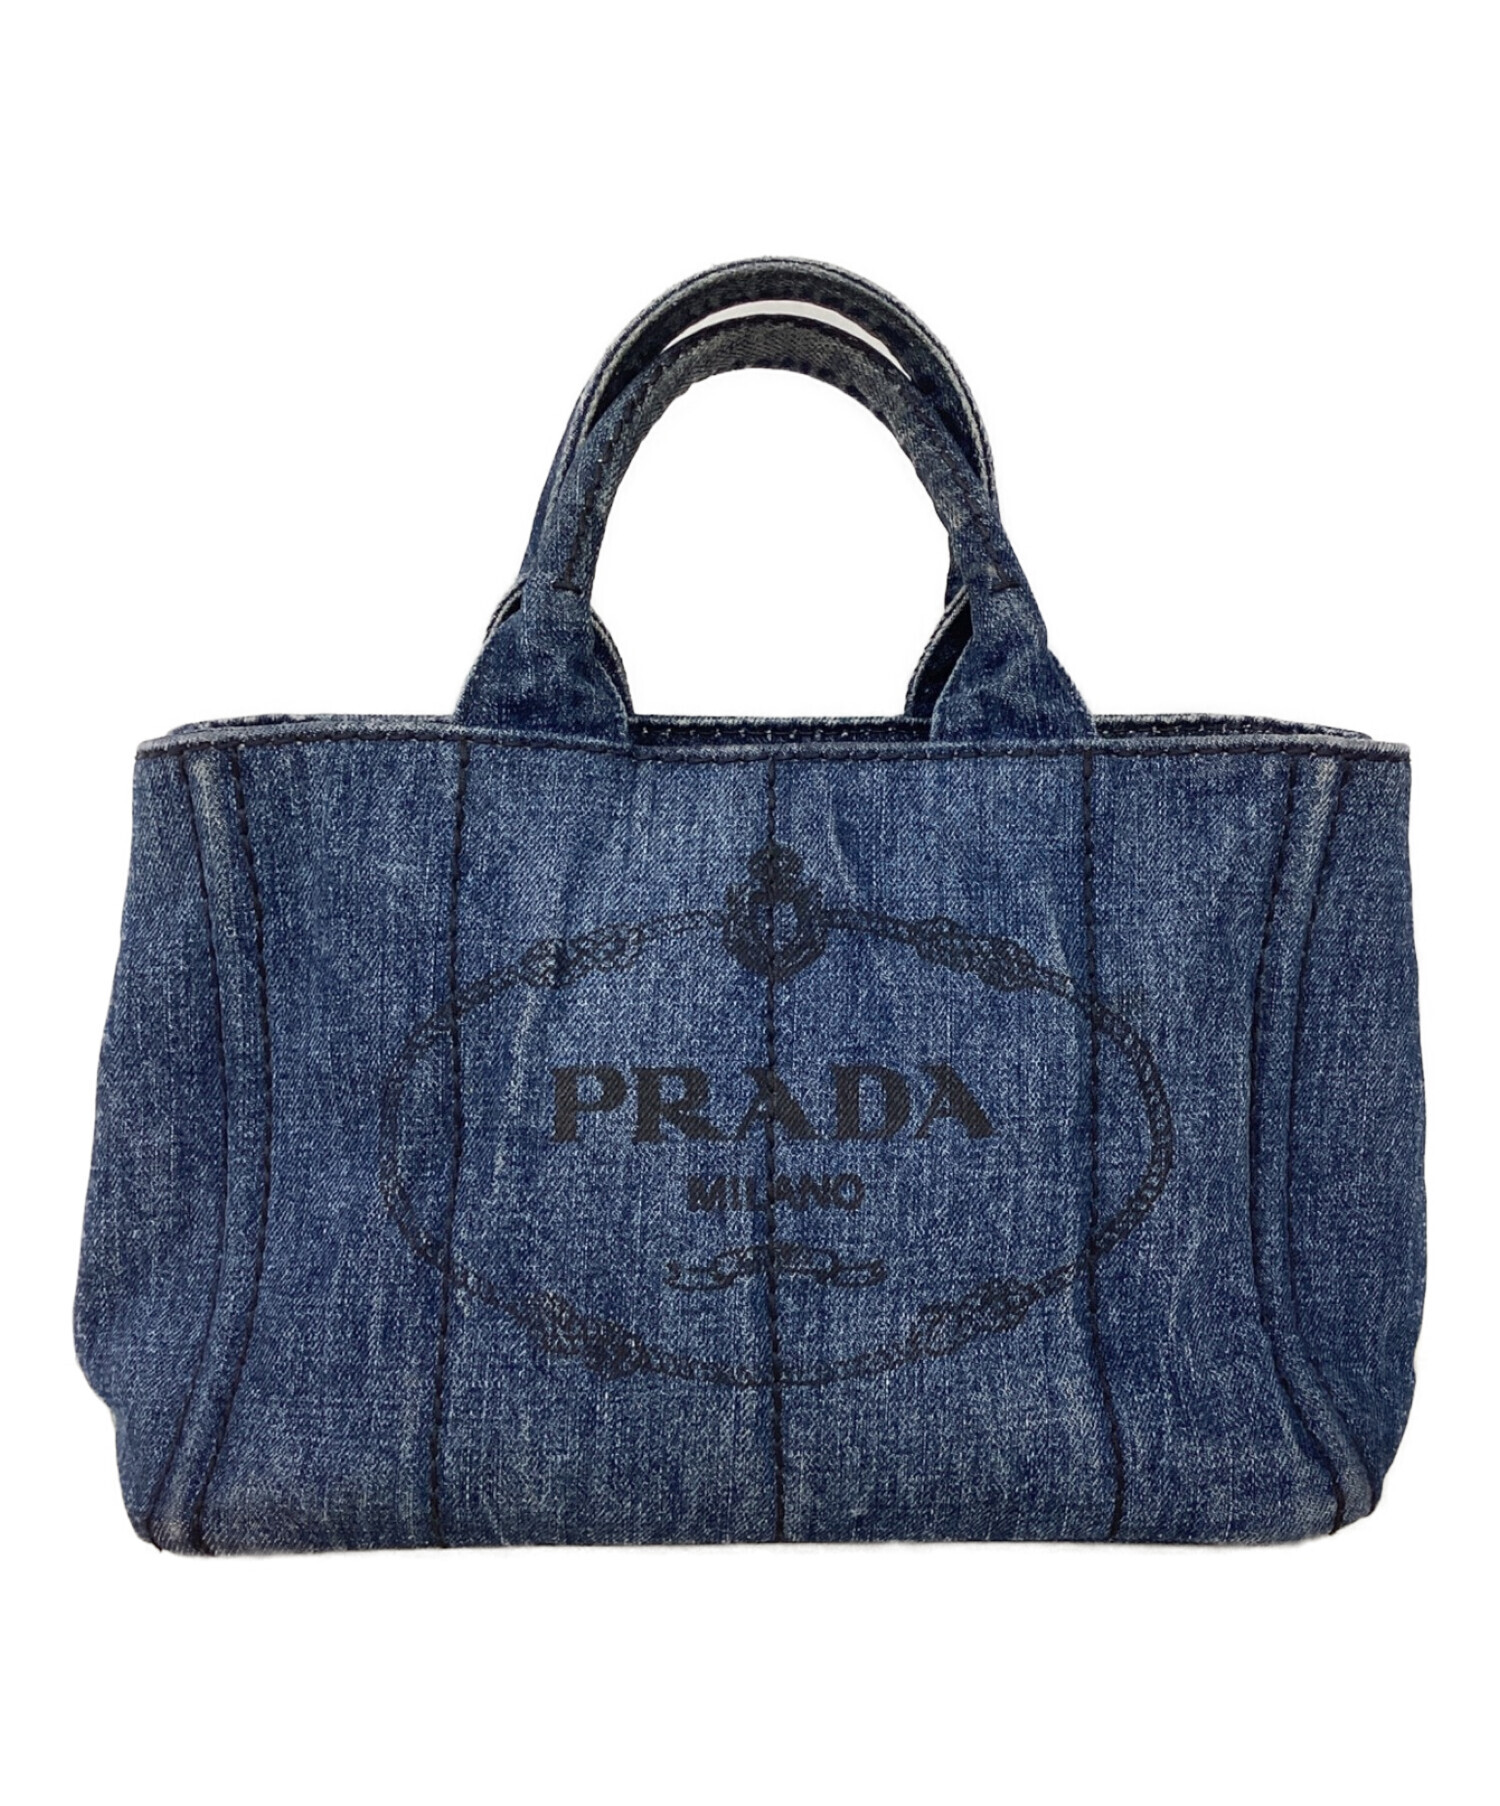 プラダ デニムショルダーバッグ(VS0181)PRADA